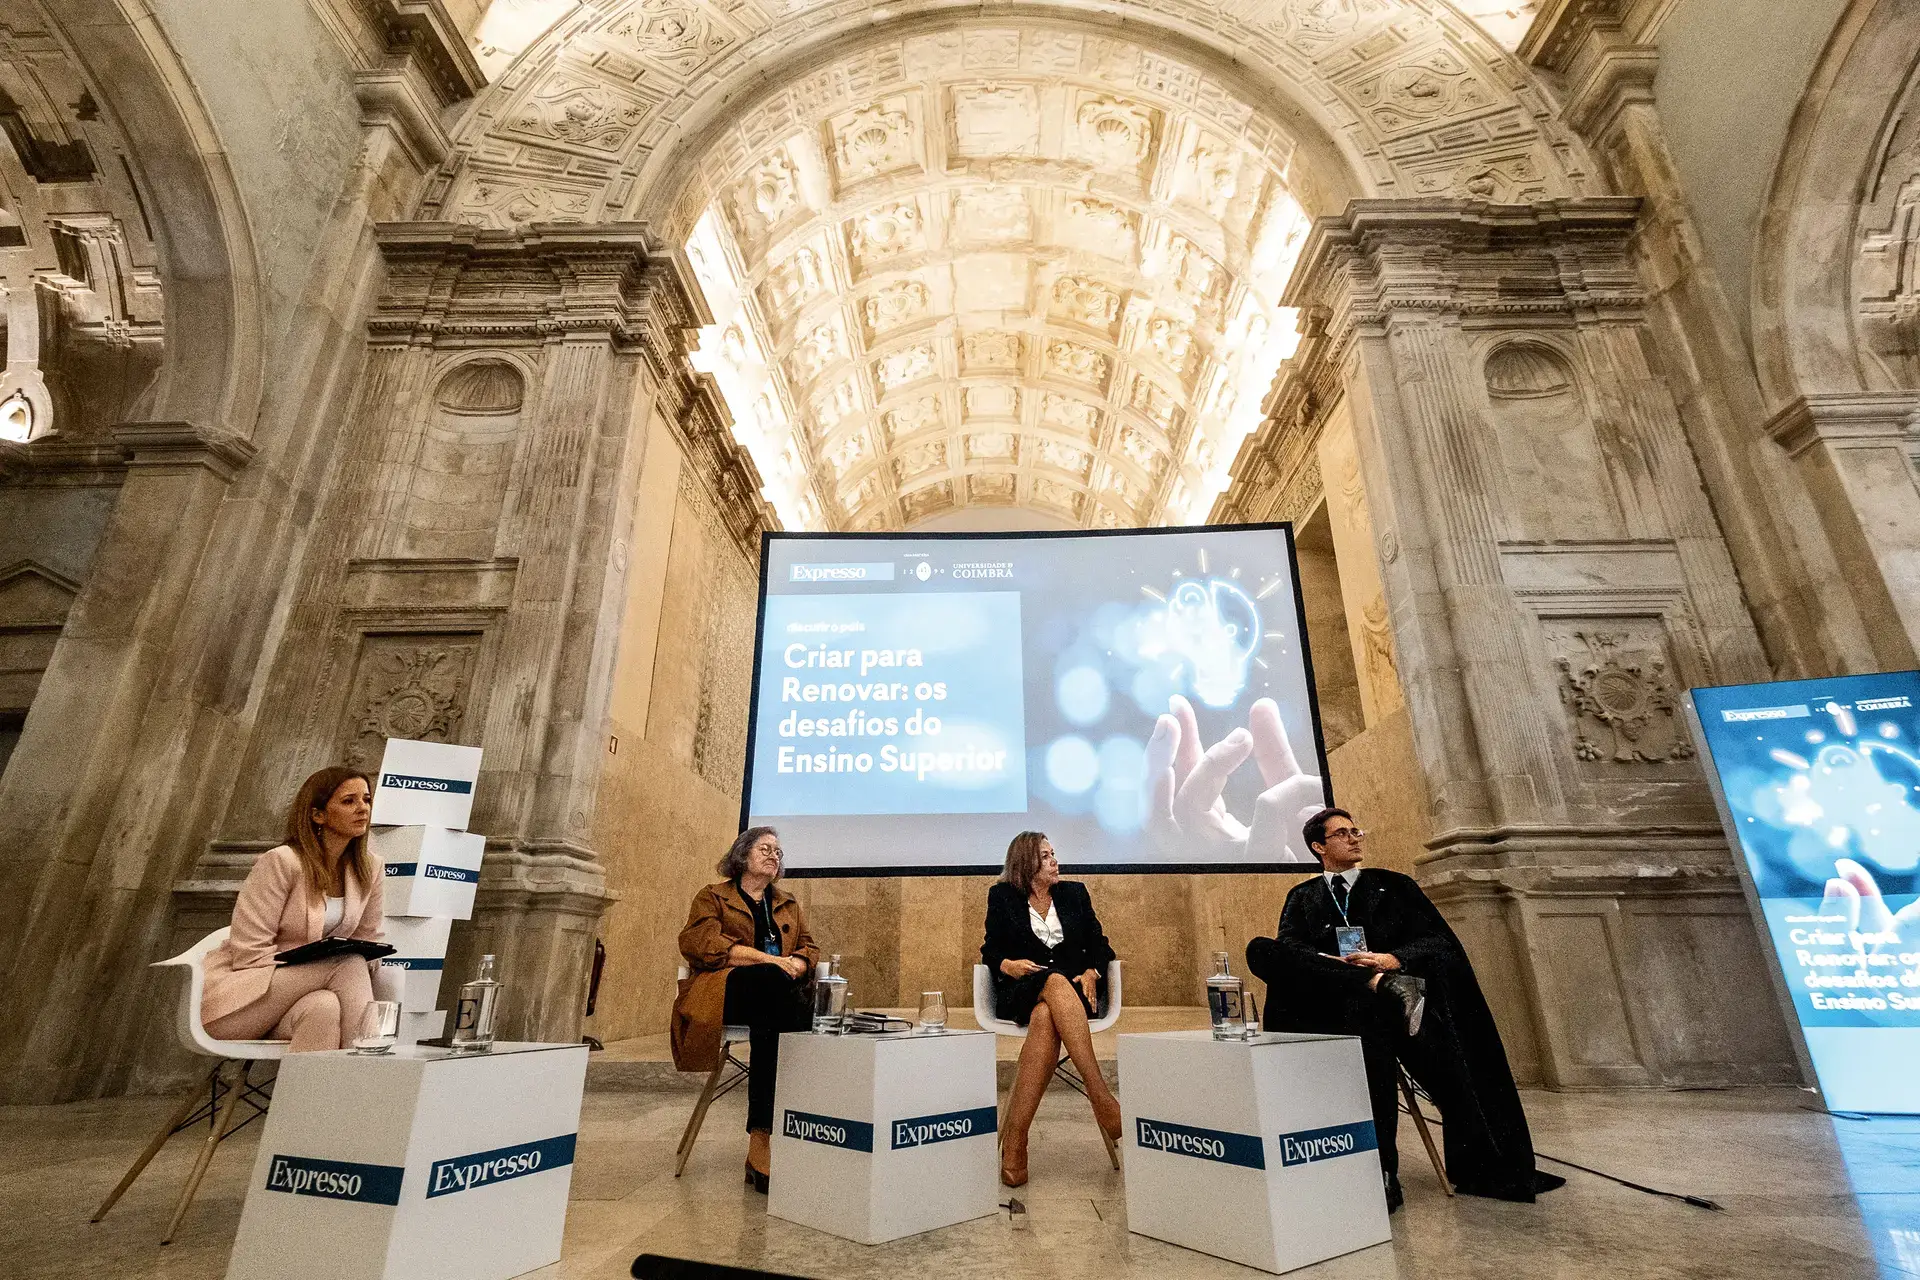 O debate sobre o futuro do ensino superior no Colégio da Trindade da Universidade de Coimbra contou com a presença de Maria de Lurdes Rodrigues, Ana Cristina Araújo e João Caseiro